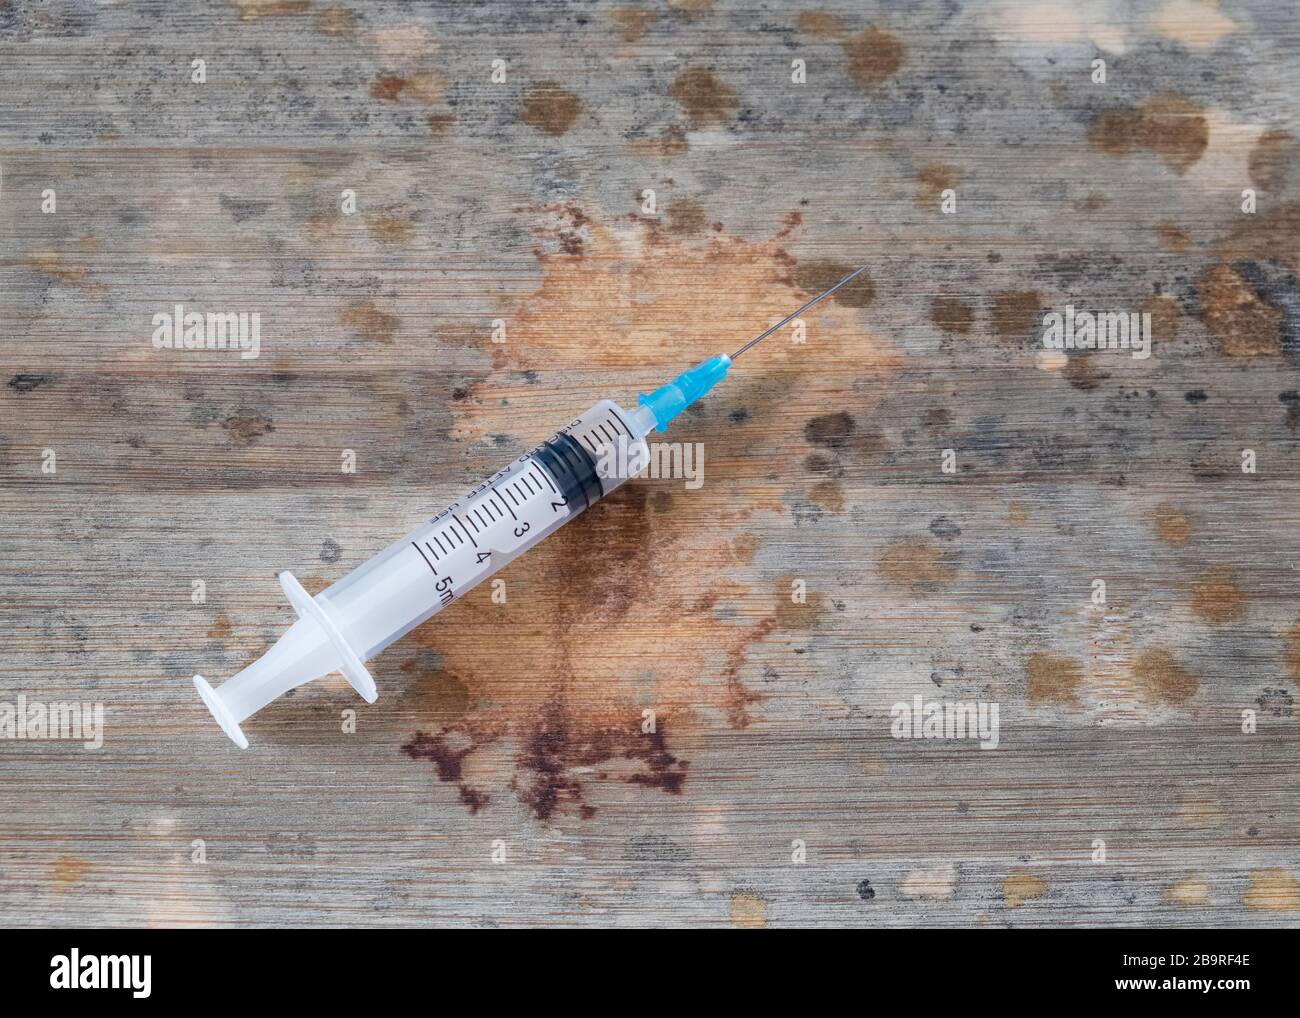 Impfkonzept, Spritze auf Holzbrett mit vielen Stellen, die an die Entwicklung des Virus erinnern. Stockfoto